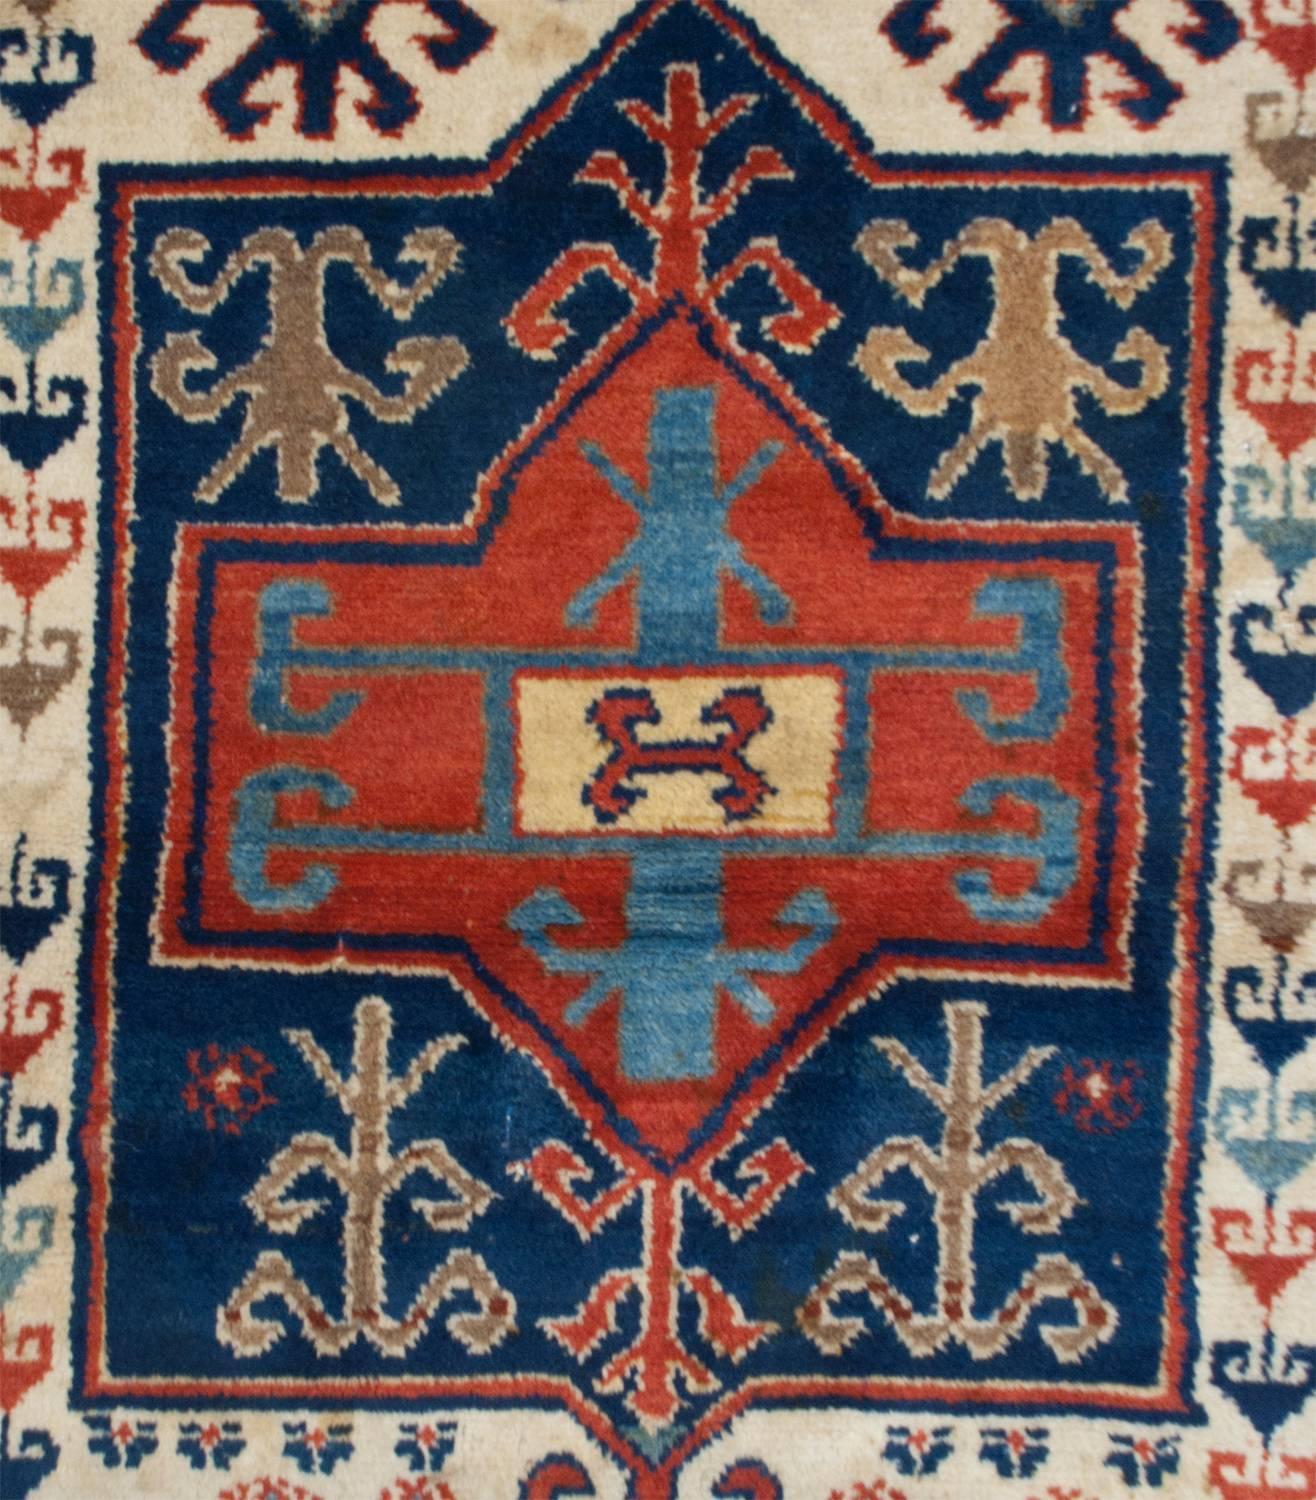 Un phénoménal tapis de prière Persan Malayer Shirvan du 19ème siècle avec un exquis motif audacieux tissé par un maître tisserand ! Les formes florales stylisées sont rendues de manière experte, en indigo clair et foncé, en cramoisi et en laine